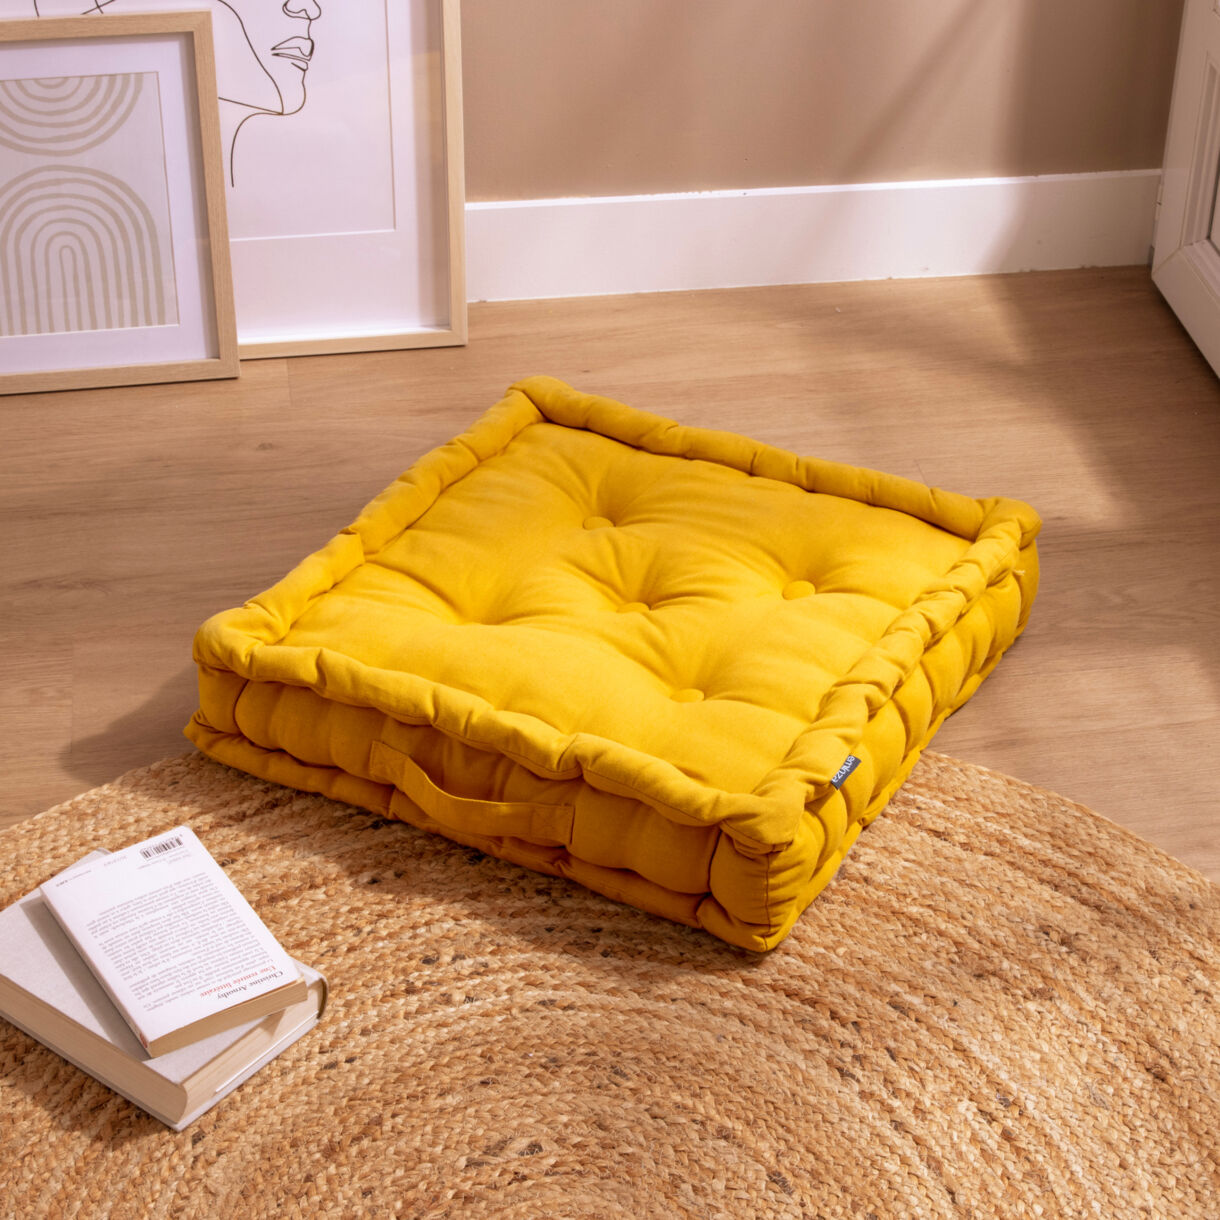 Cojín de suelo en algodón (50 x 50 cm) Pixel Amarillo mostaza